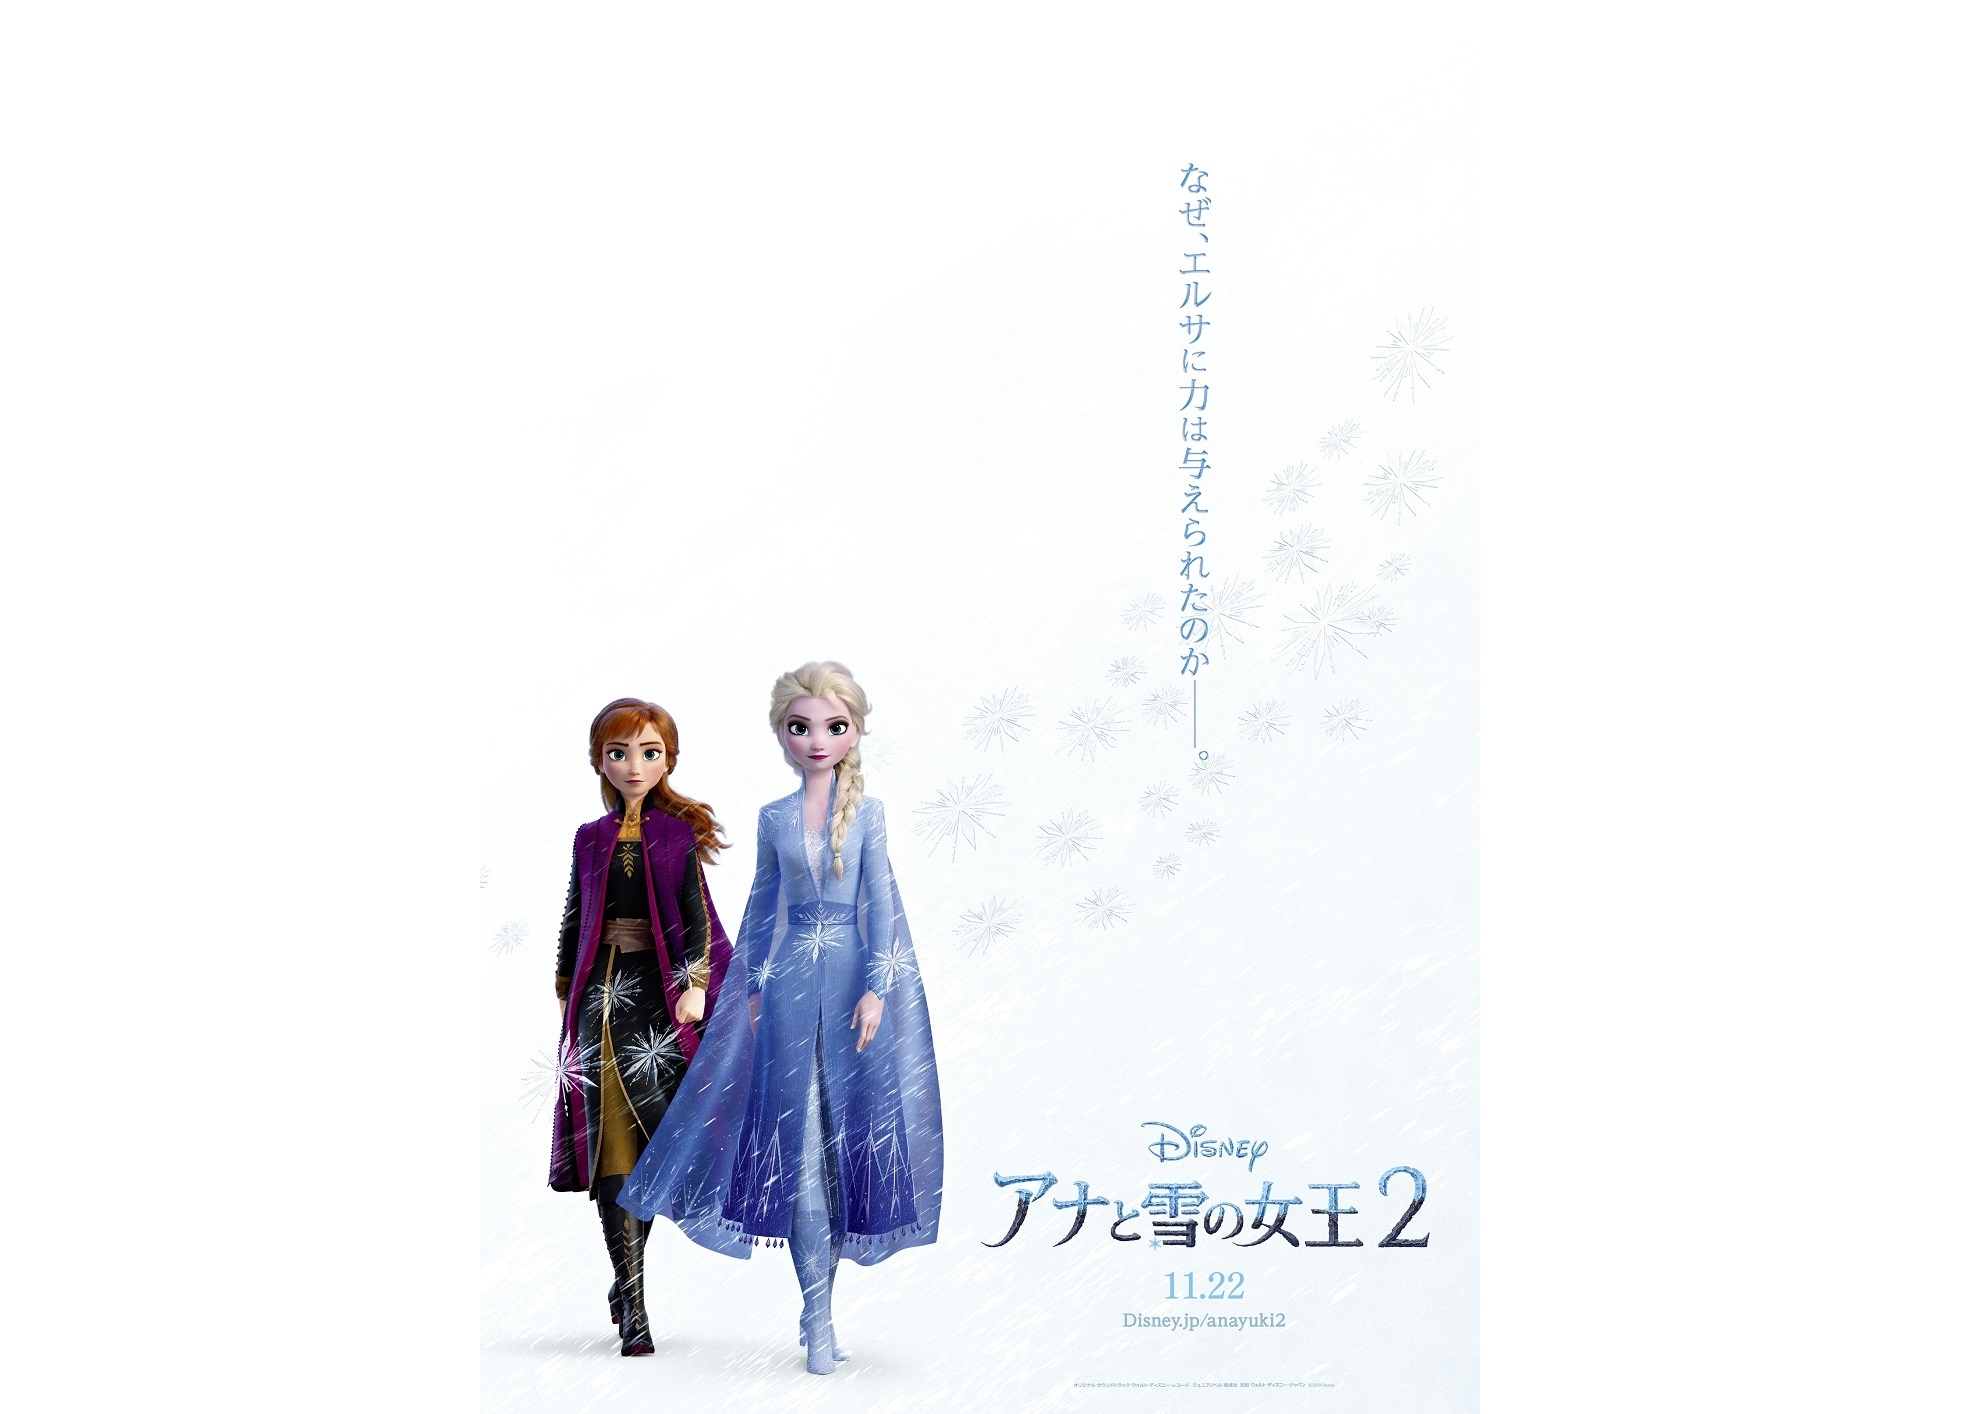 『アナと雪の女王2』日本限定ビジュアルポスターが解禁